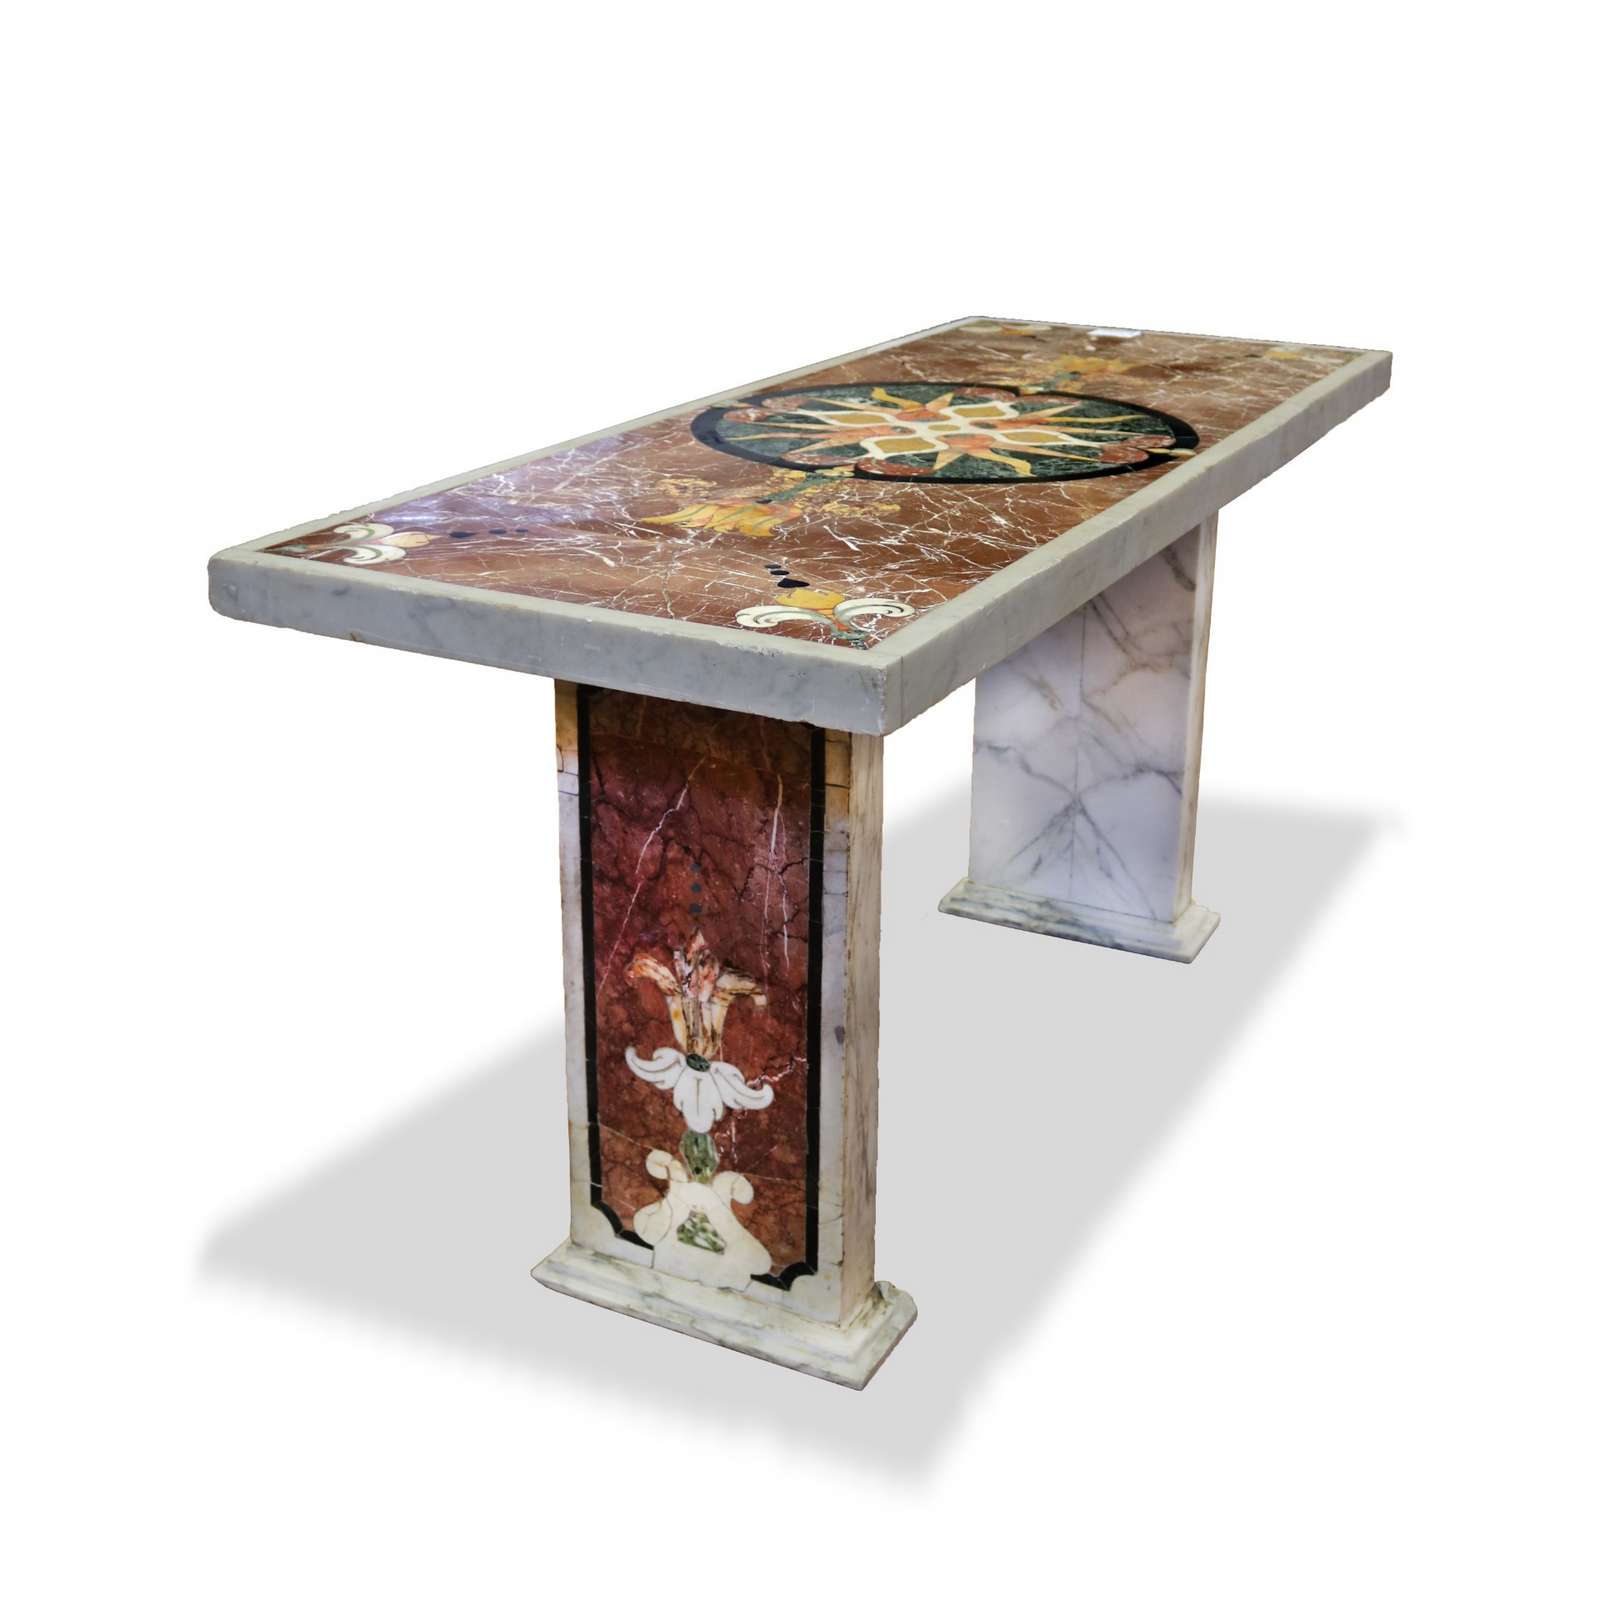 Antico tavolo in marmo. Epoca 1700. - Tavoli in vari materiali - Tavoli e complementi - Prodotti - Antichità Fiorillo